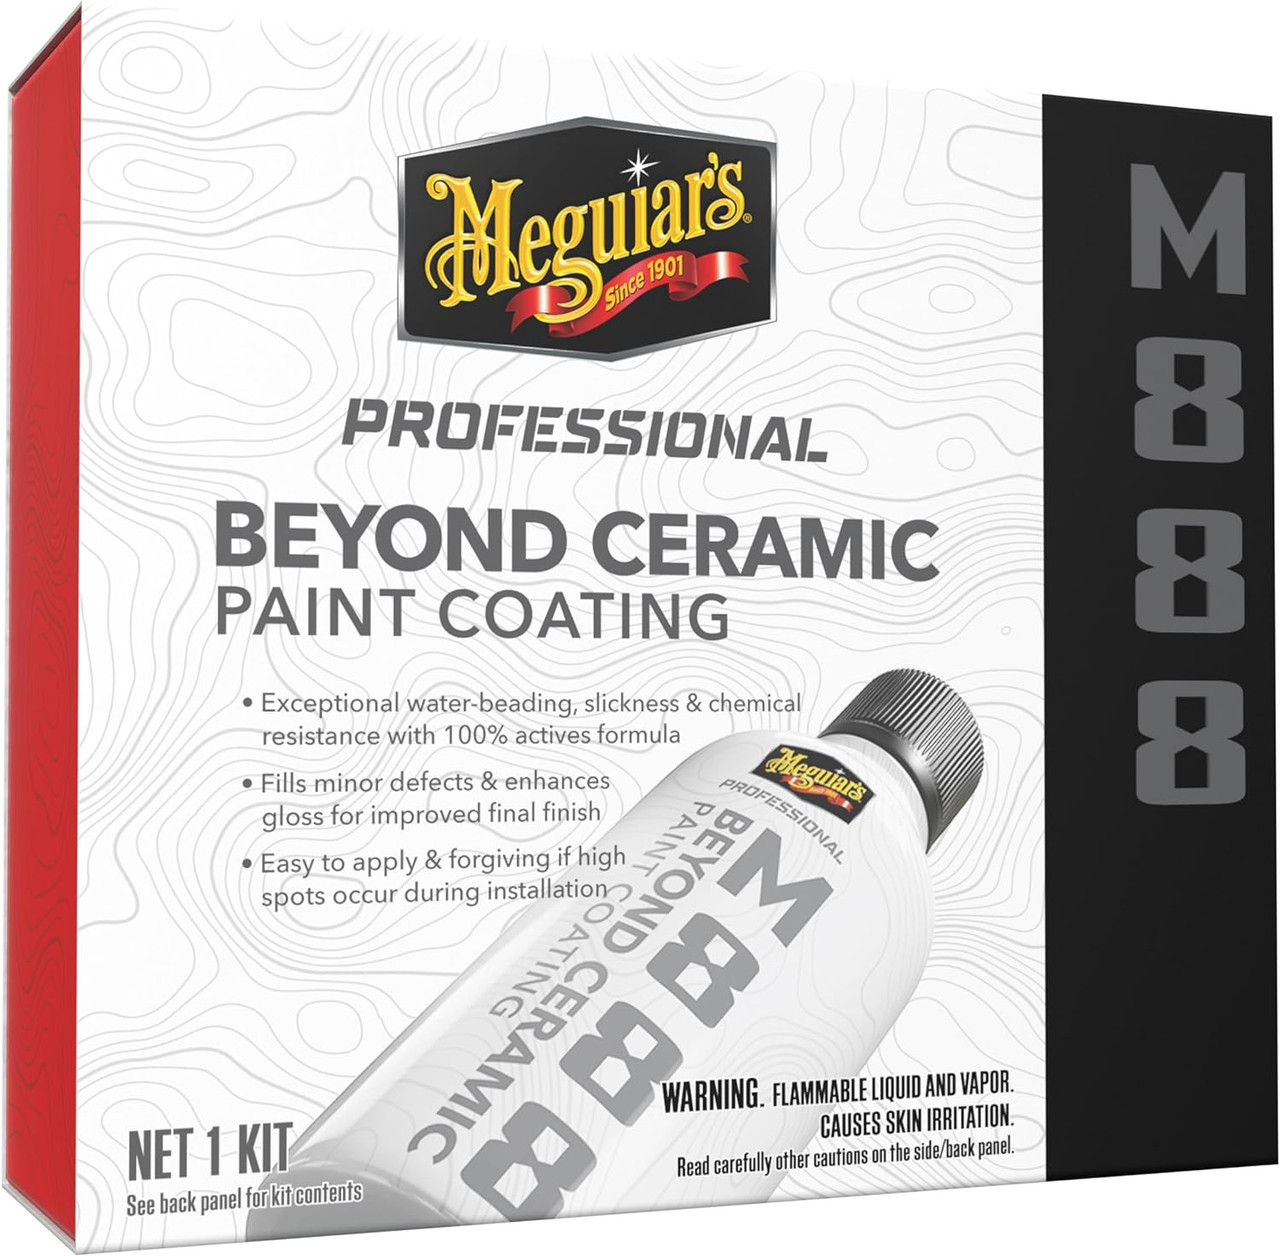 Meguiar's Professional Beyond Ceramic Paint Coating M888 (M88800